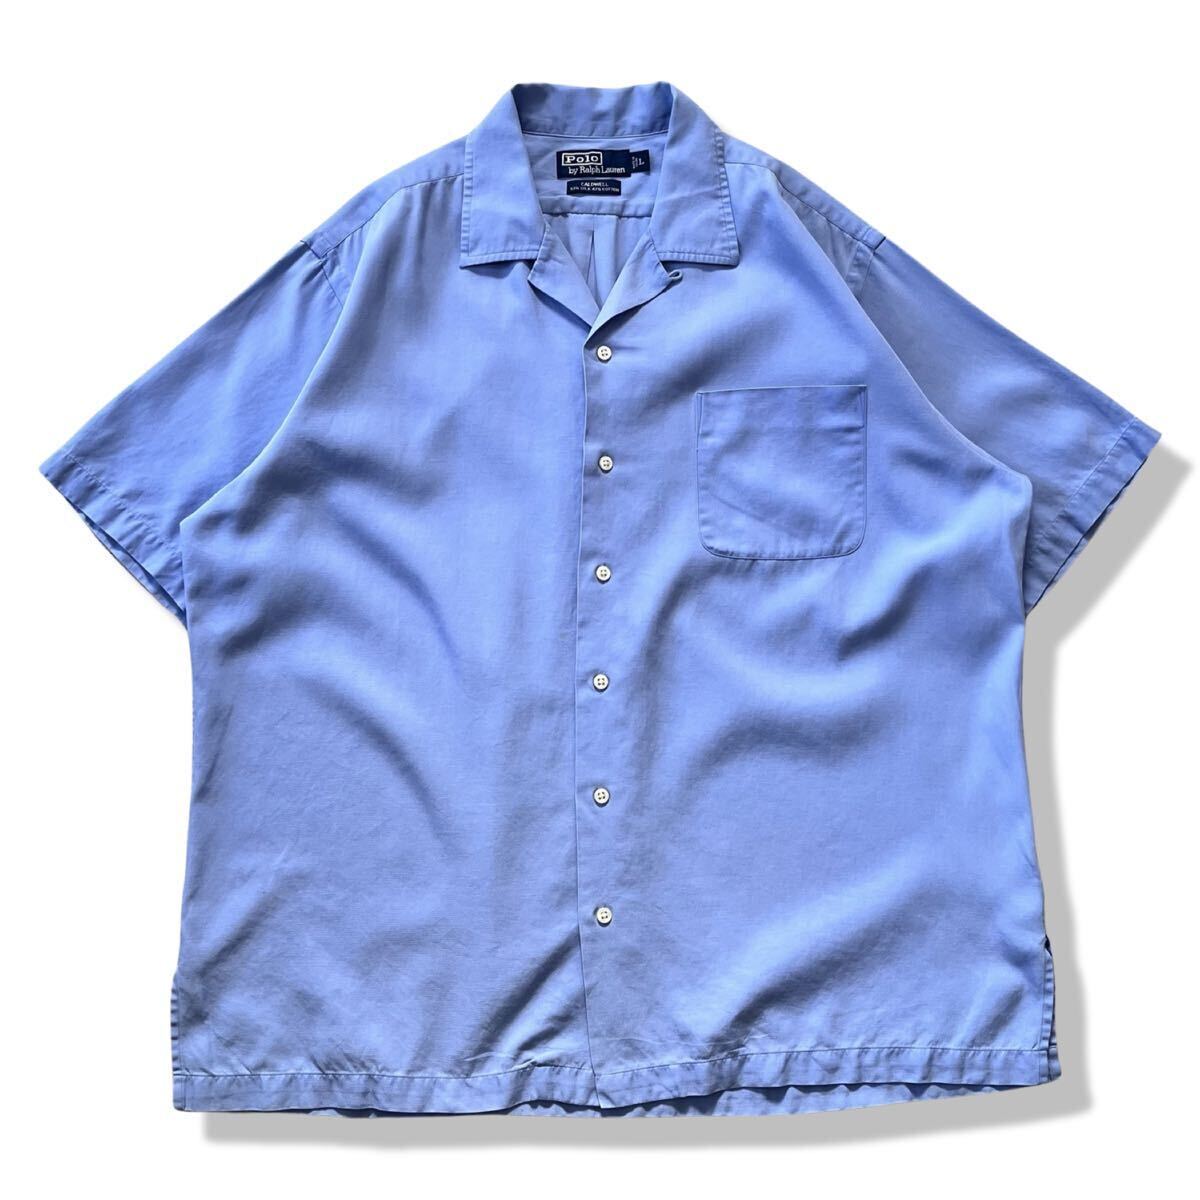 【90s】ポロラルフローレン CALDWELL シルク混 半袖 オープンカラーシャツ サックスブルー L コールドウェル rrl ヴィンテージ  開襟シャツ